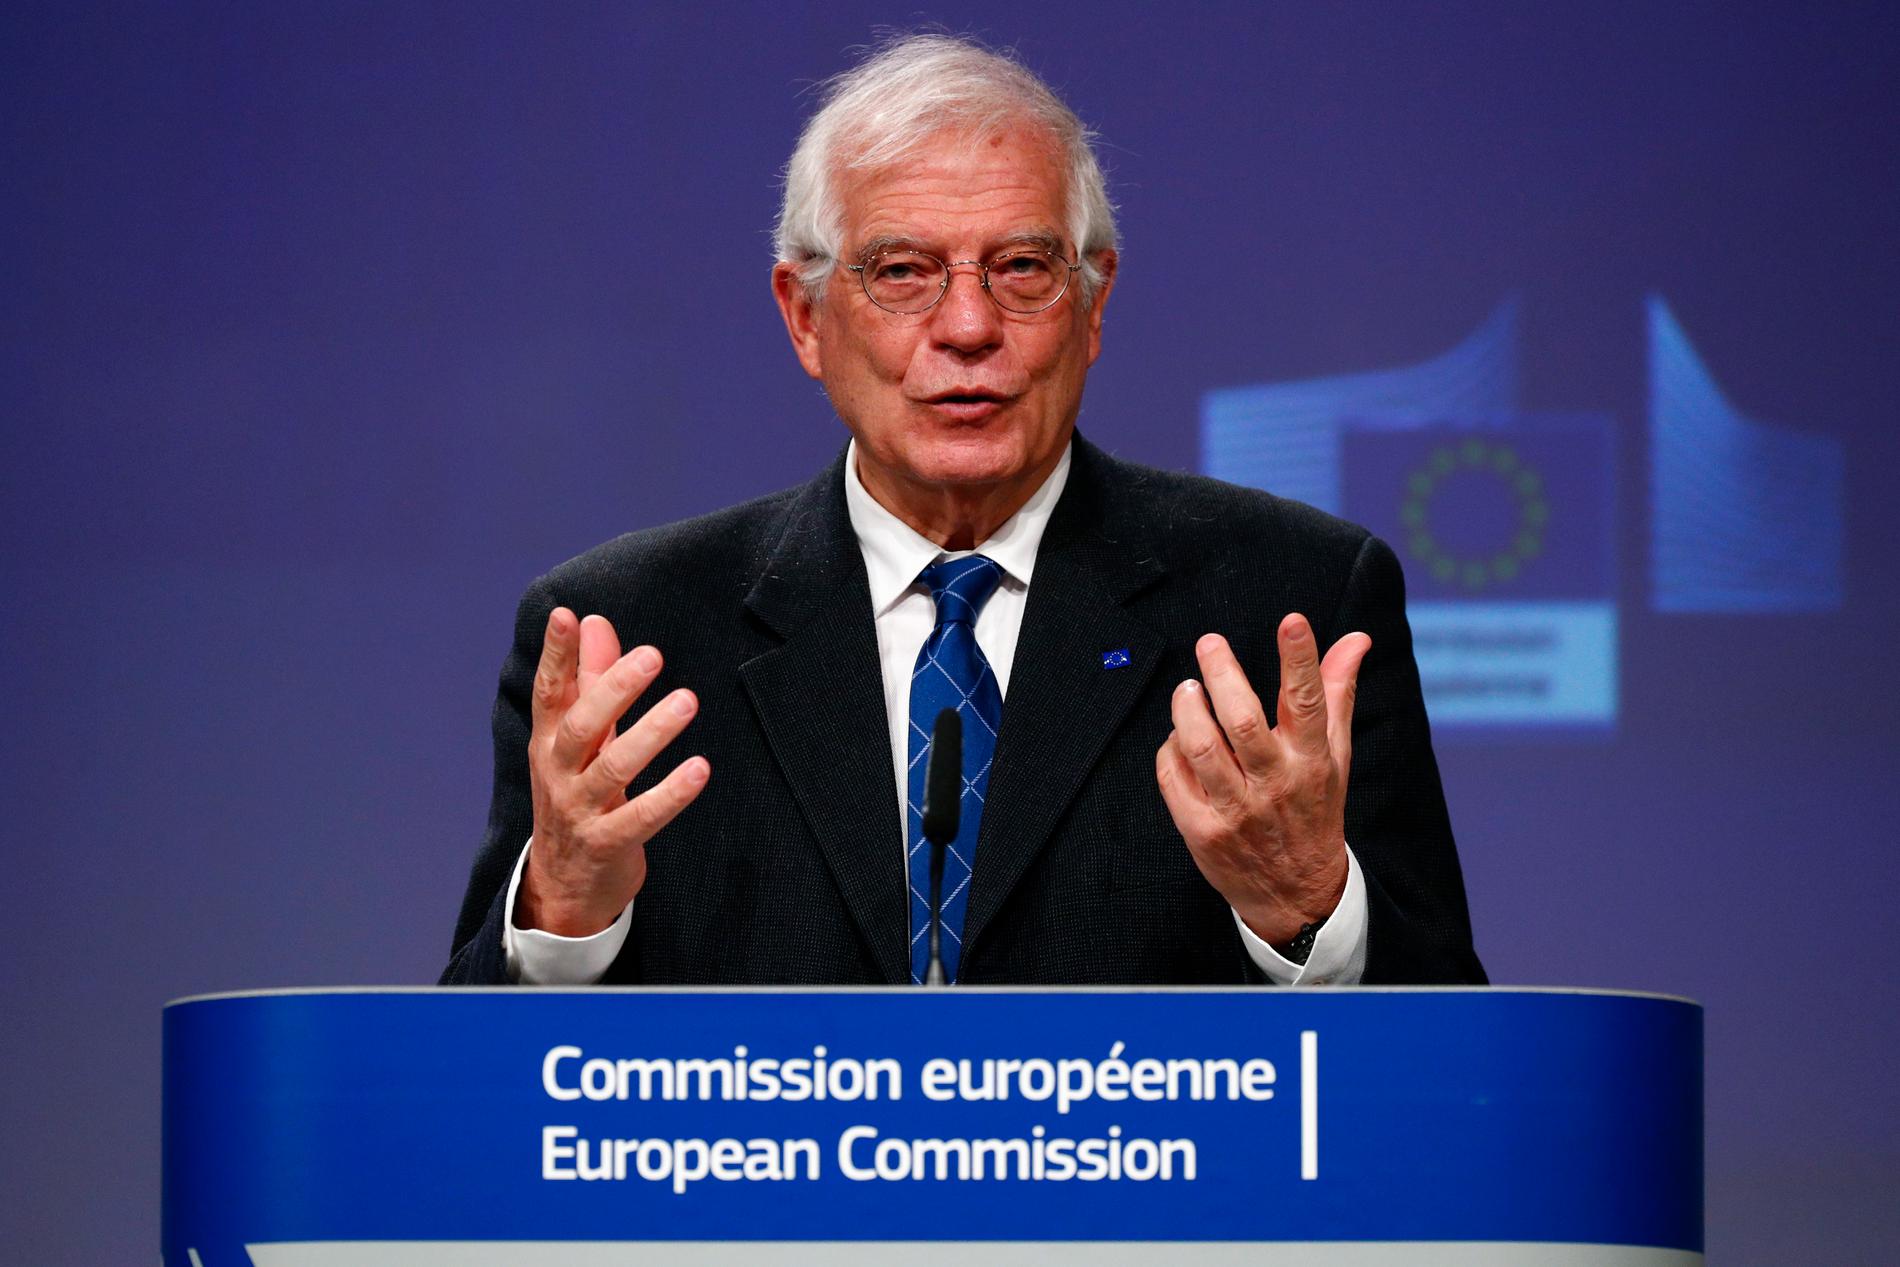 EU:s utrikeschef Josep Borrell säger att det finns omkring 250 000 EU-medborgare runt om i världen som vill komma hem.